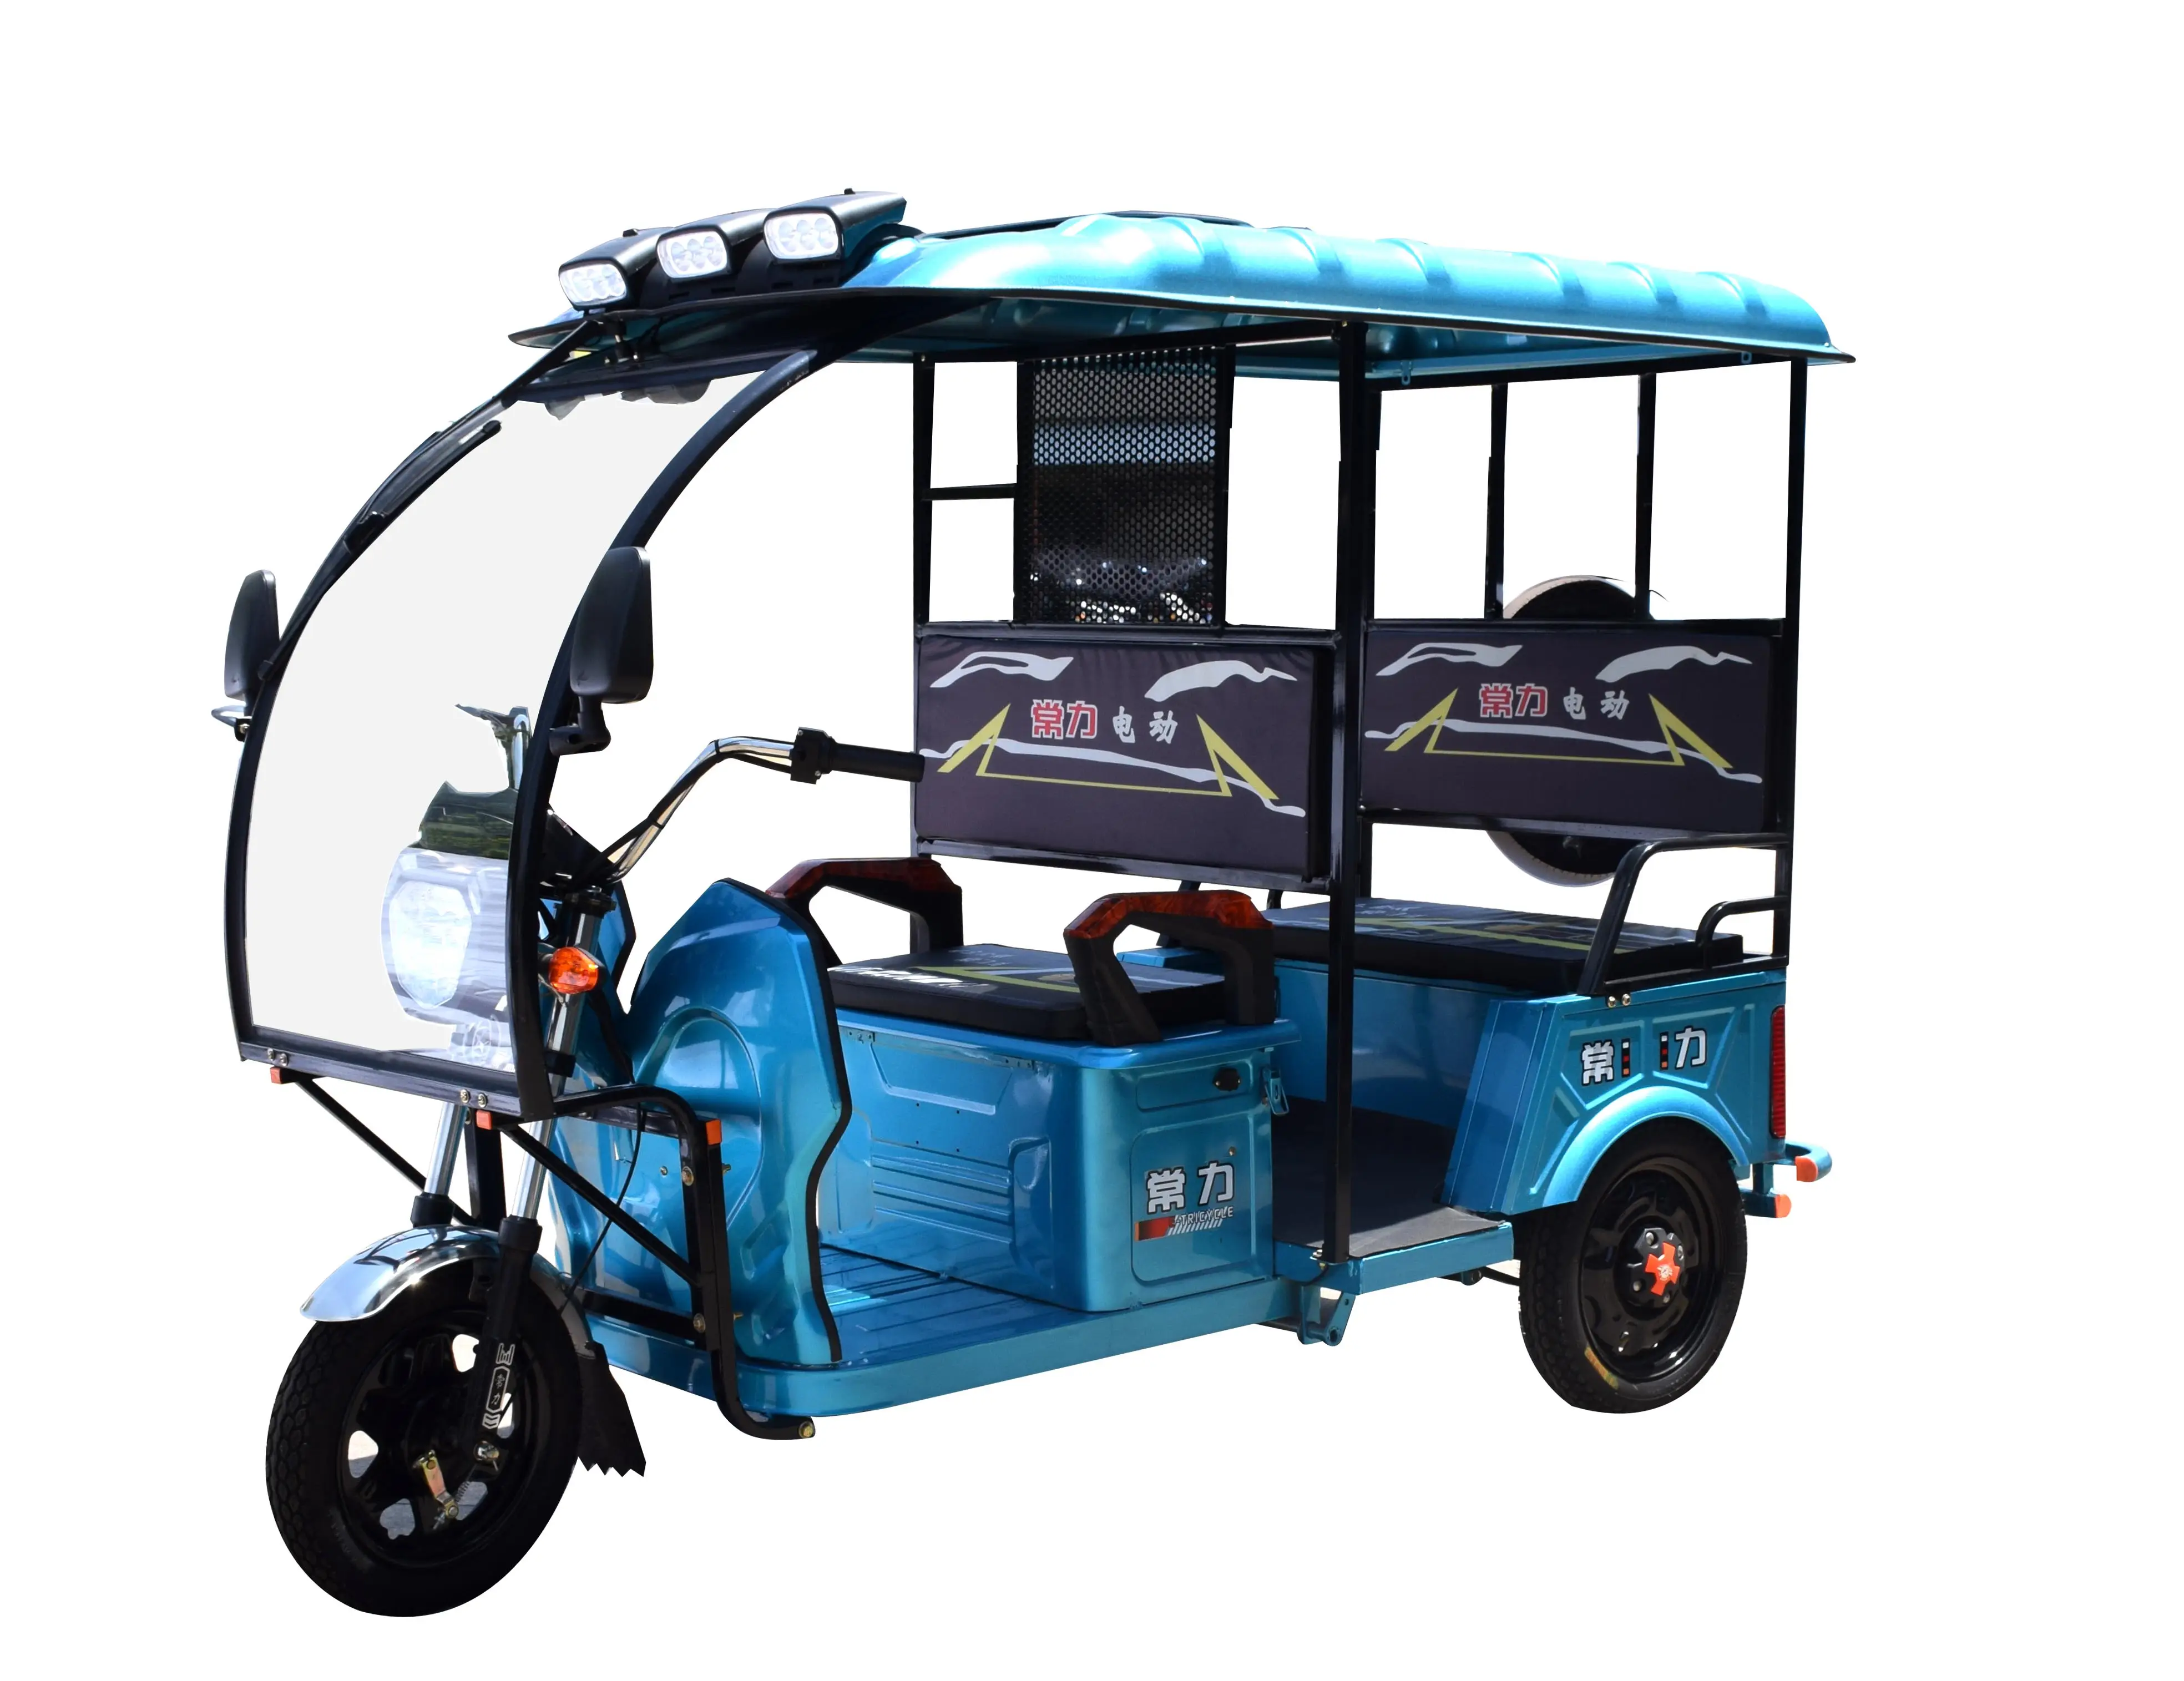 तीन पहिया इलेक्ट्रिक रिक्शा/इलेक्ट्रिक यात्री ऑटो रिक्शा/बिजली ऑटो रिक्शा